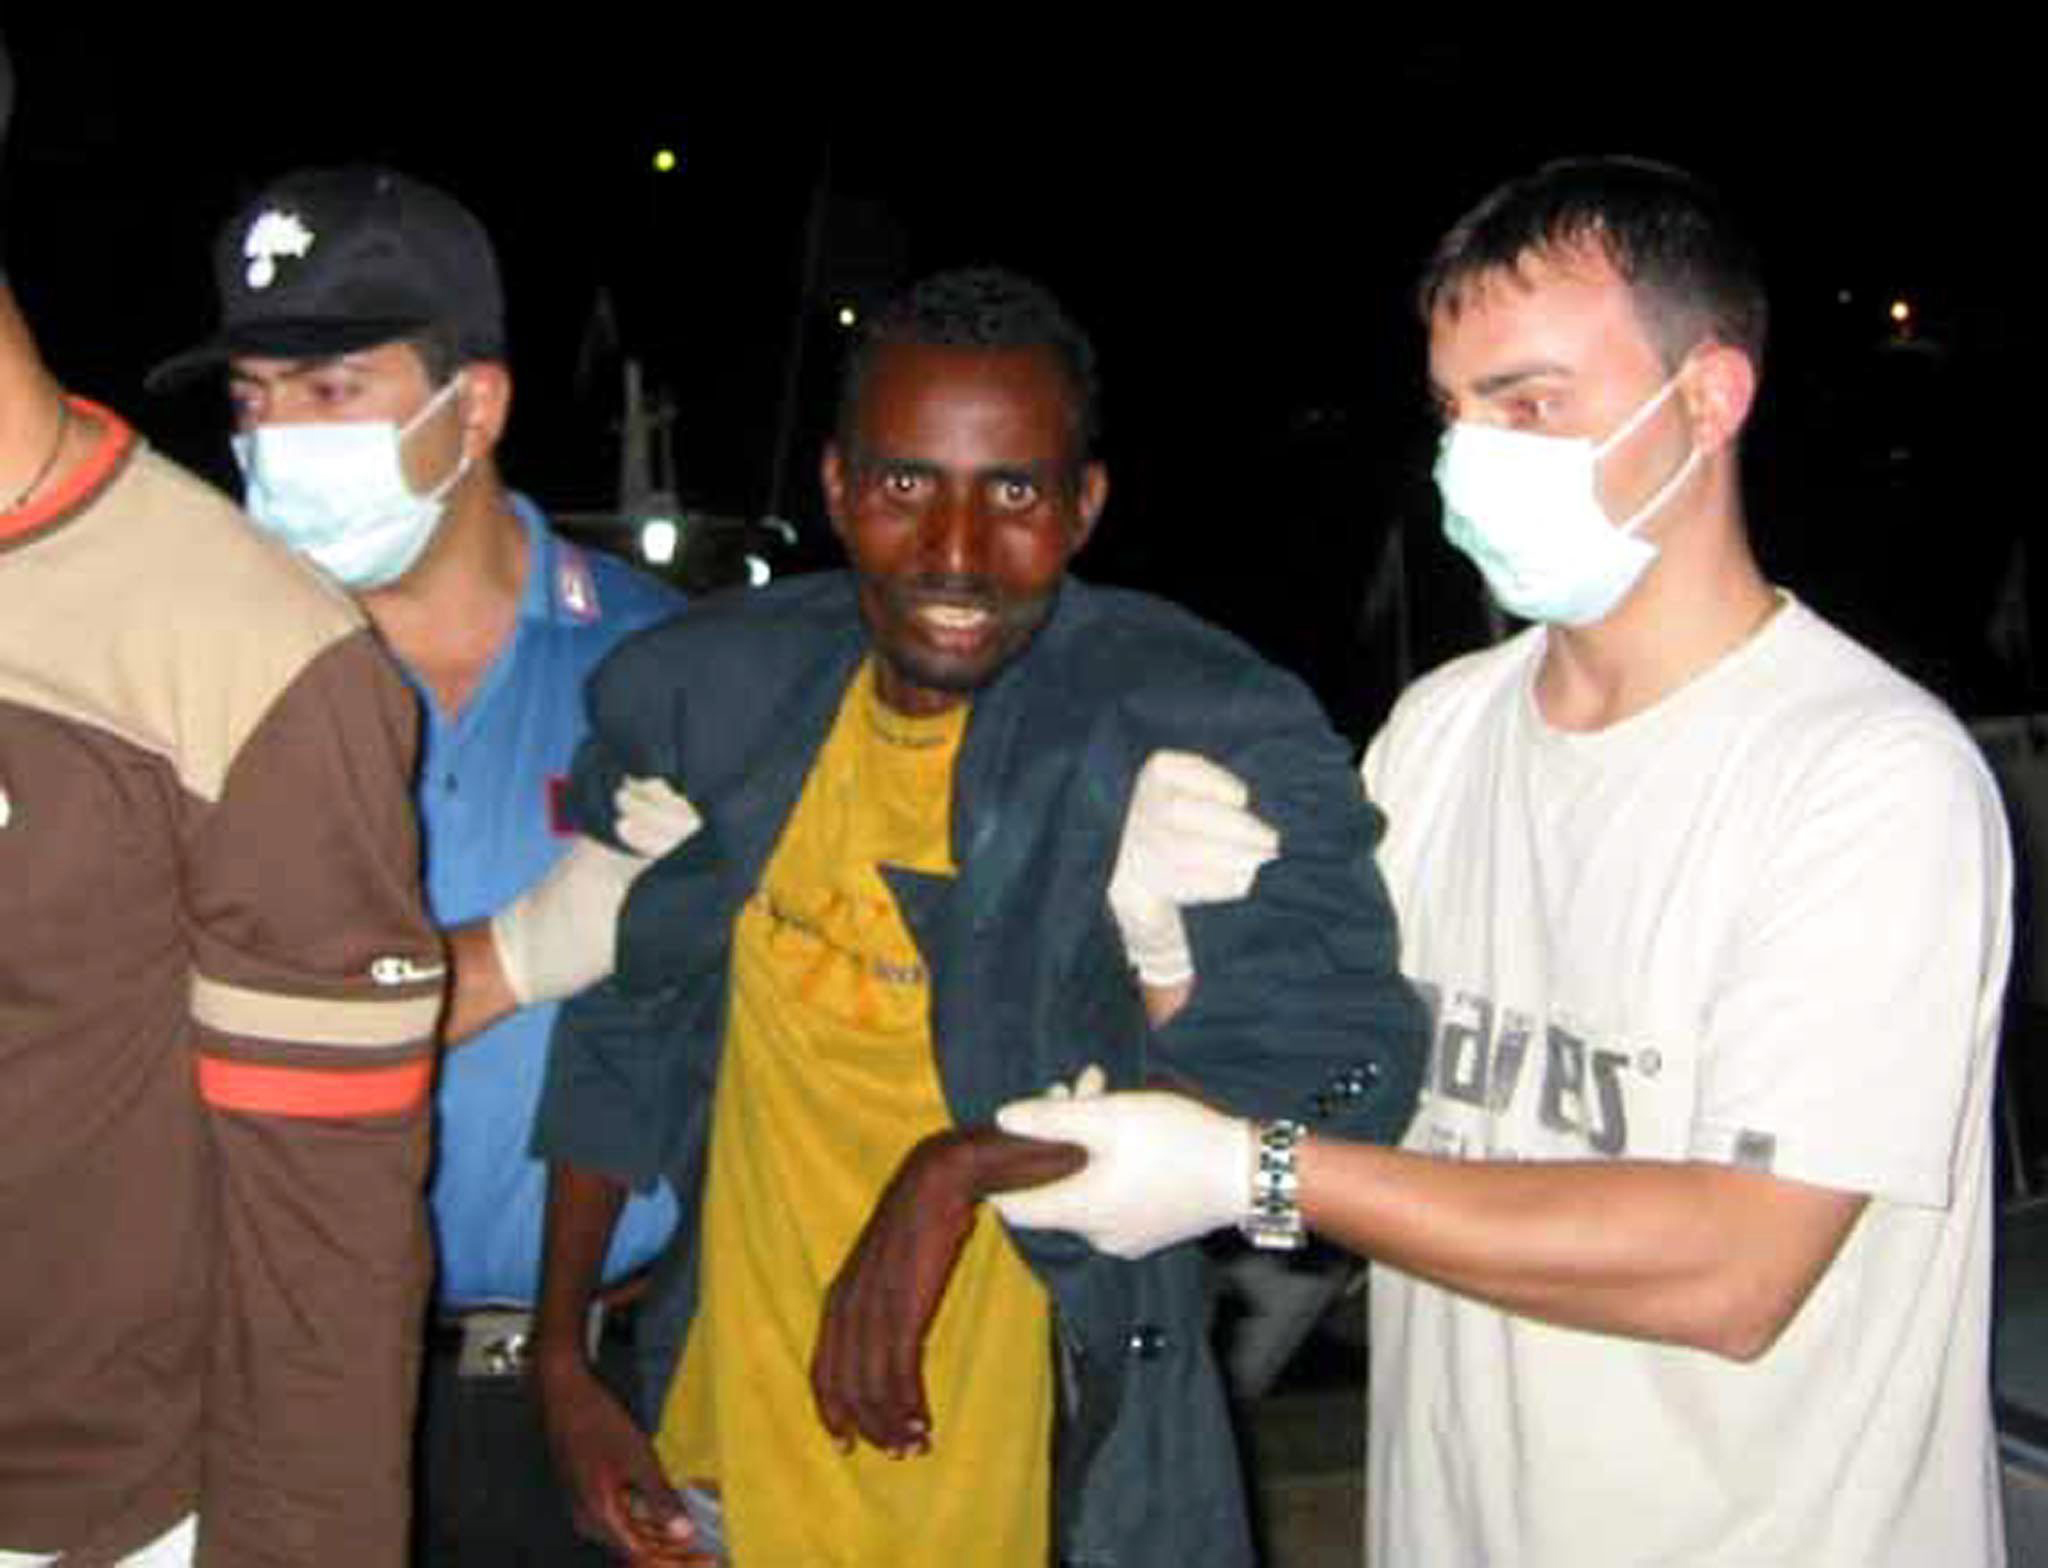 Italienische Carabinieri begleiten einen Somalier, der in Lampedusa landete. Zu ihrem Schutz tragen sie Handschuhe und Mundschutz.